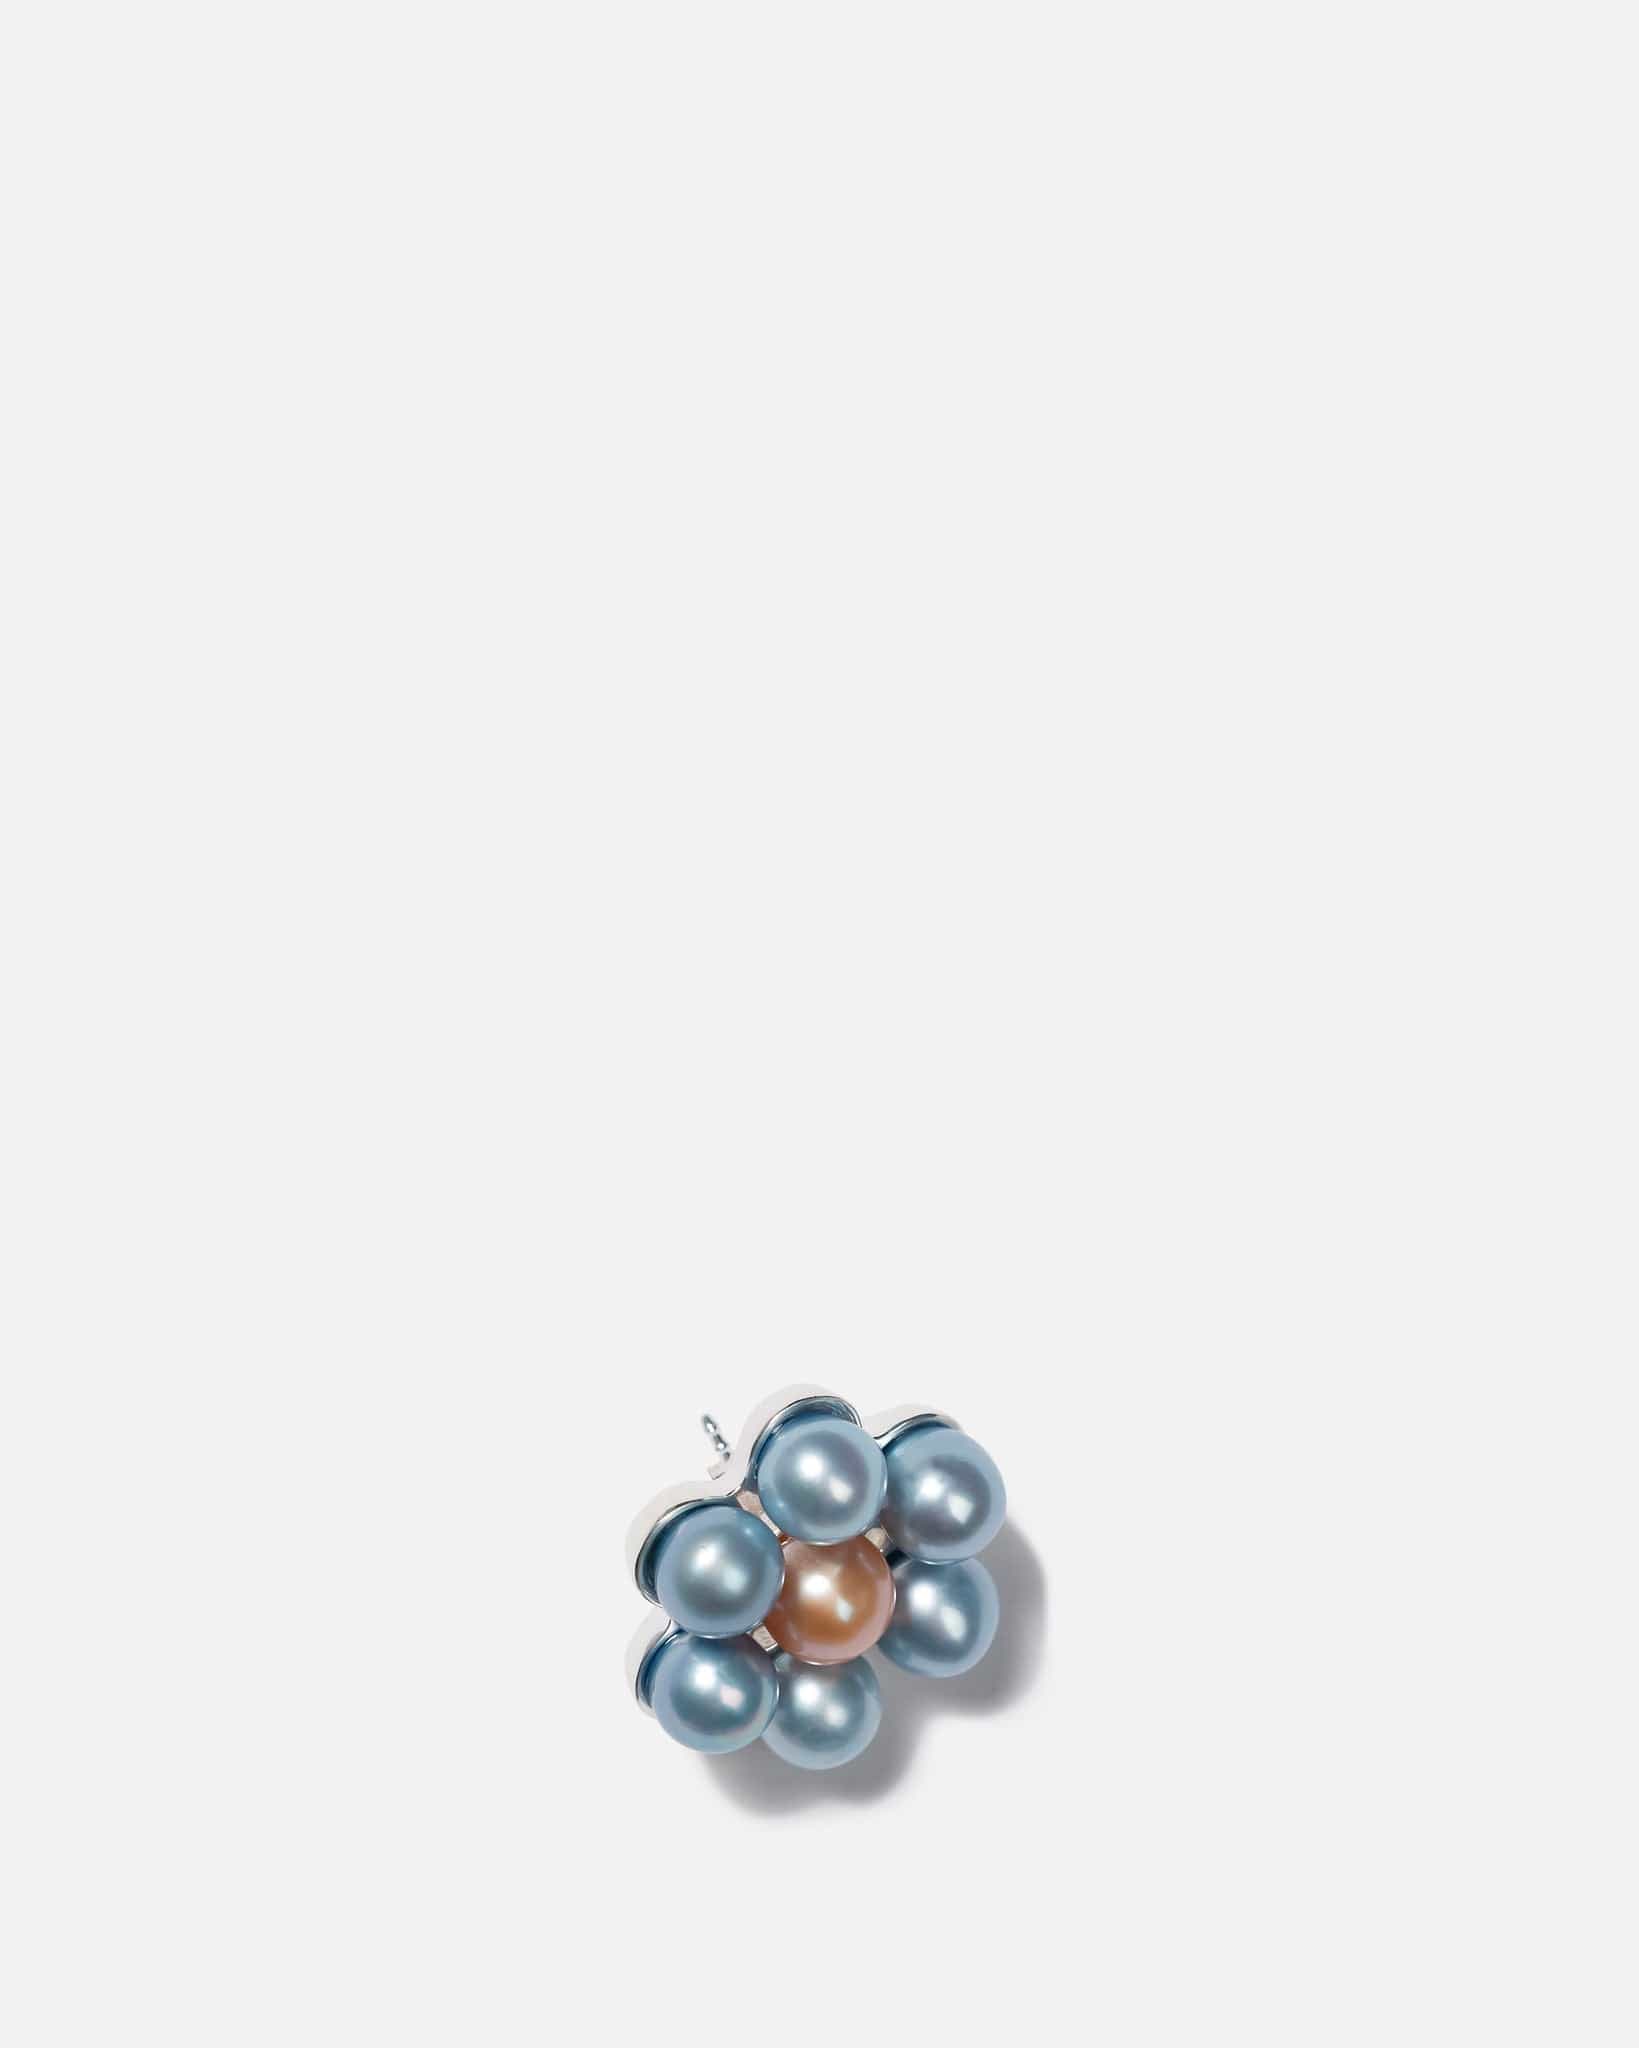 Botter Jewelry Daisy Pearl Single Earring in Blue Flower